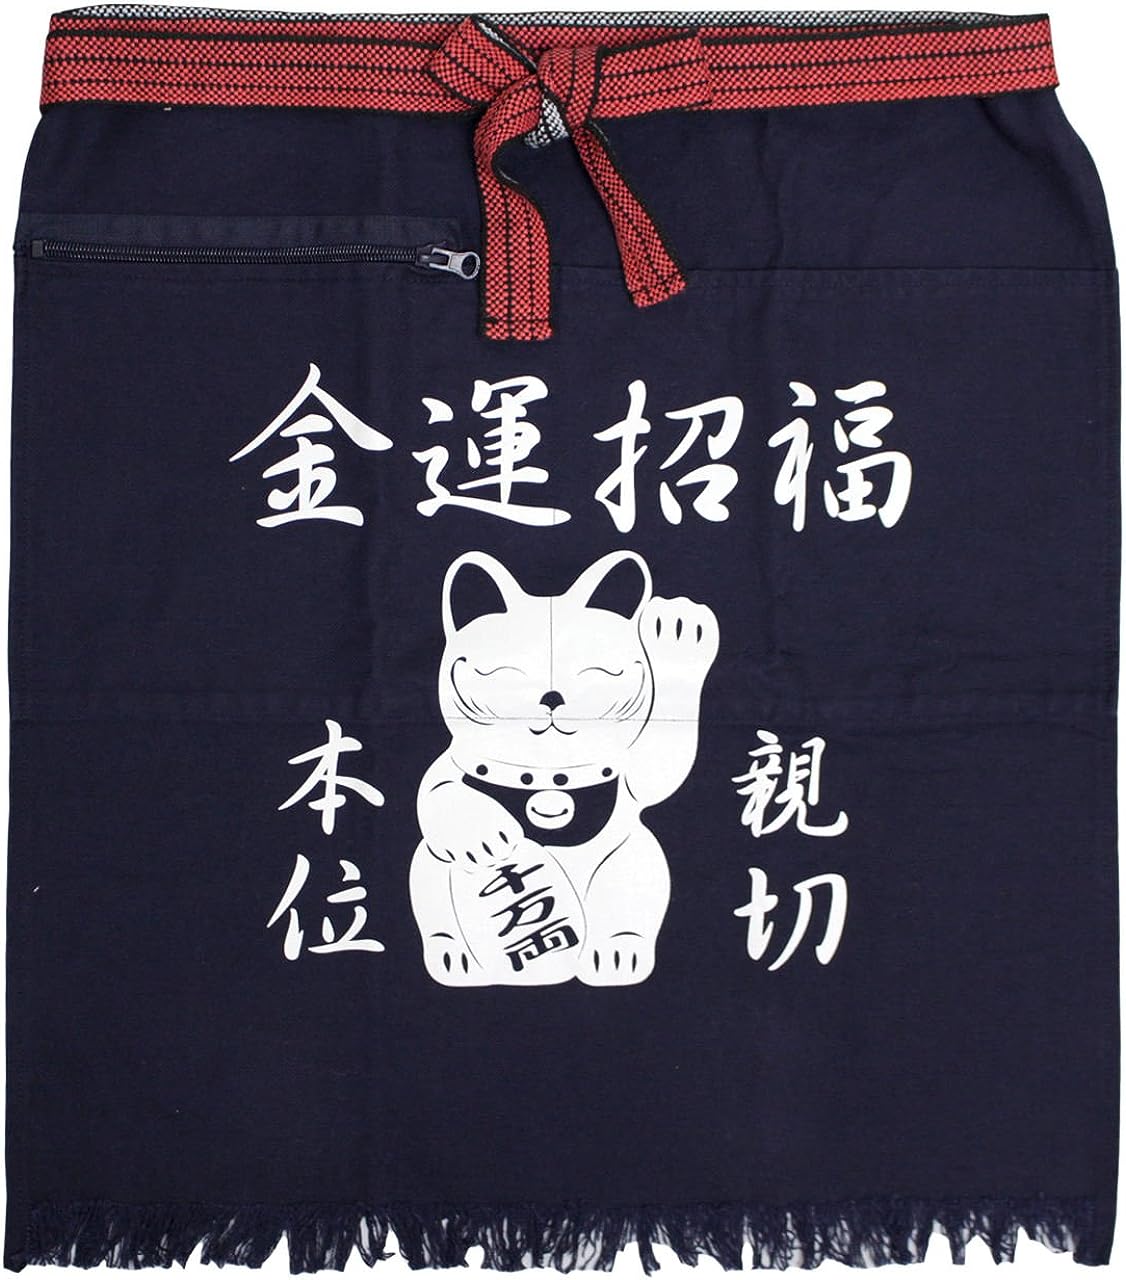 Homaekake/Maekake Apron Maneki-neko/Fortune Beckoning Cat